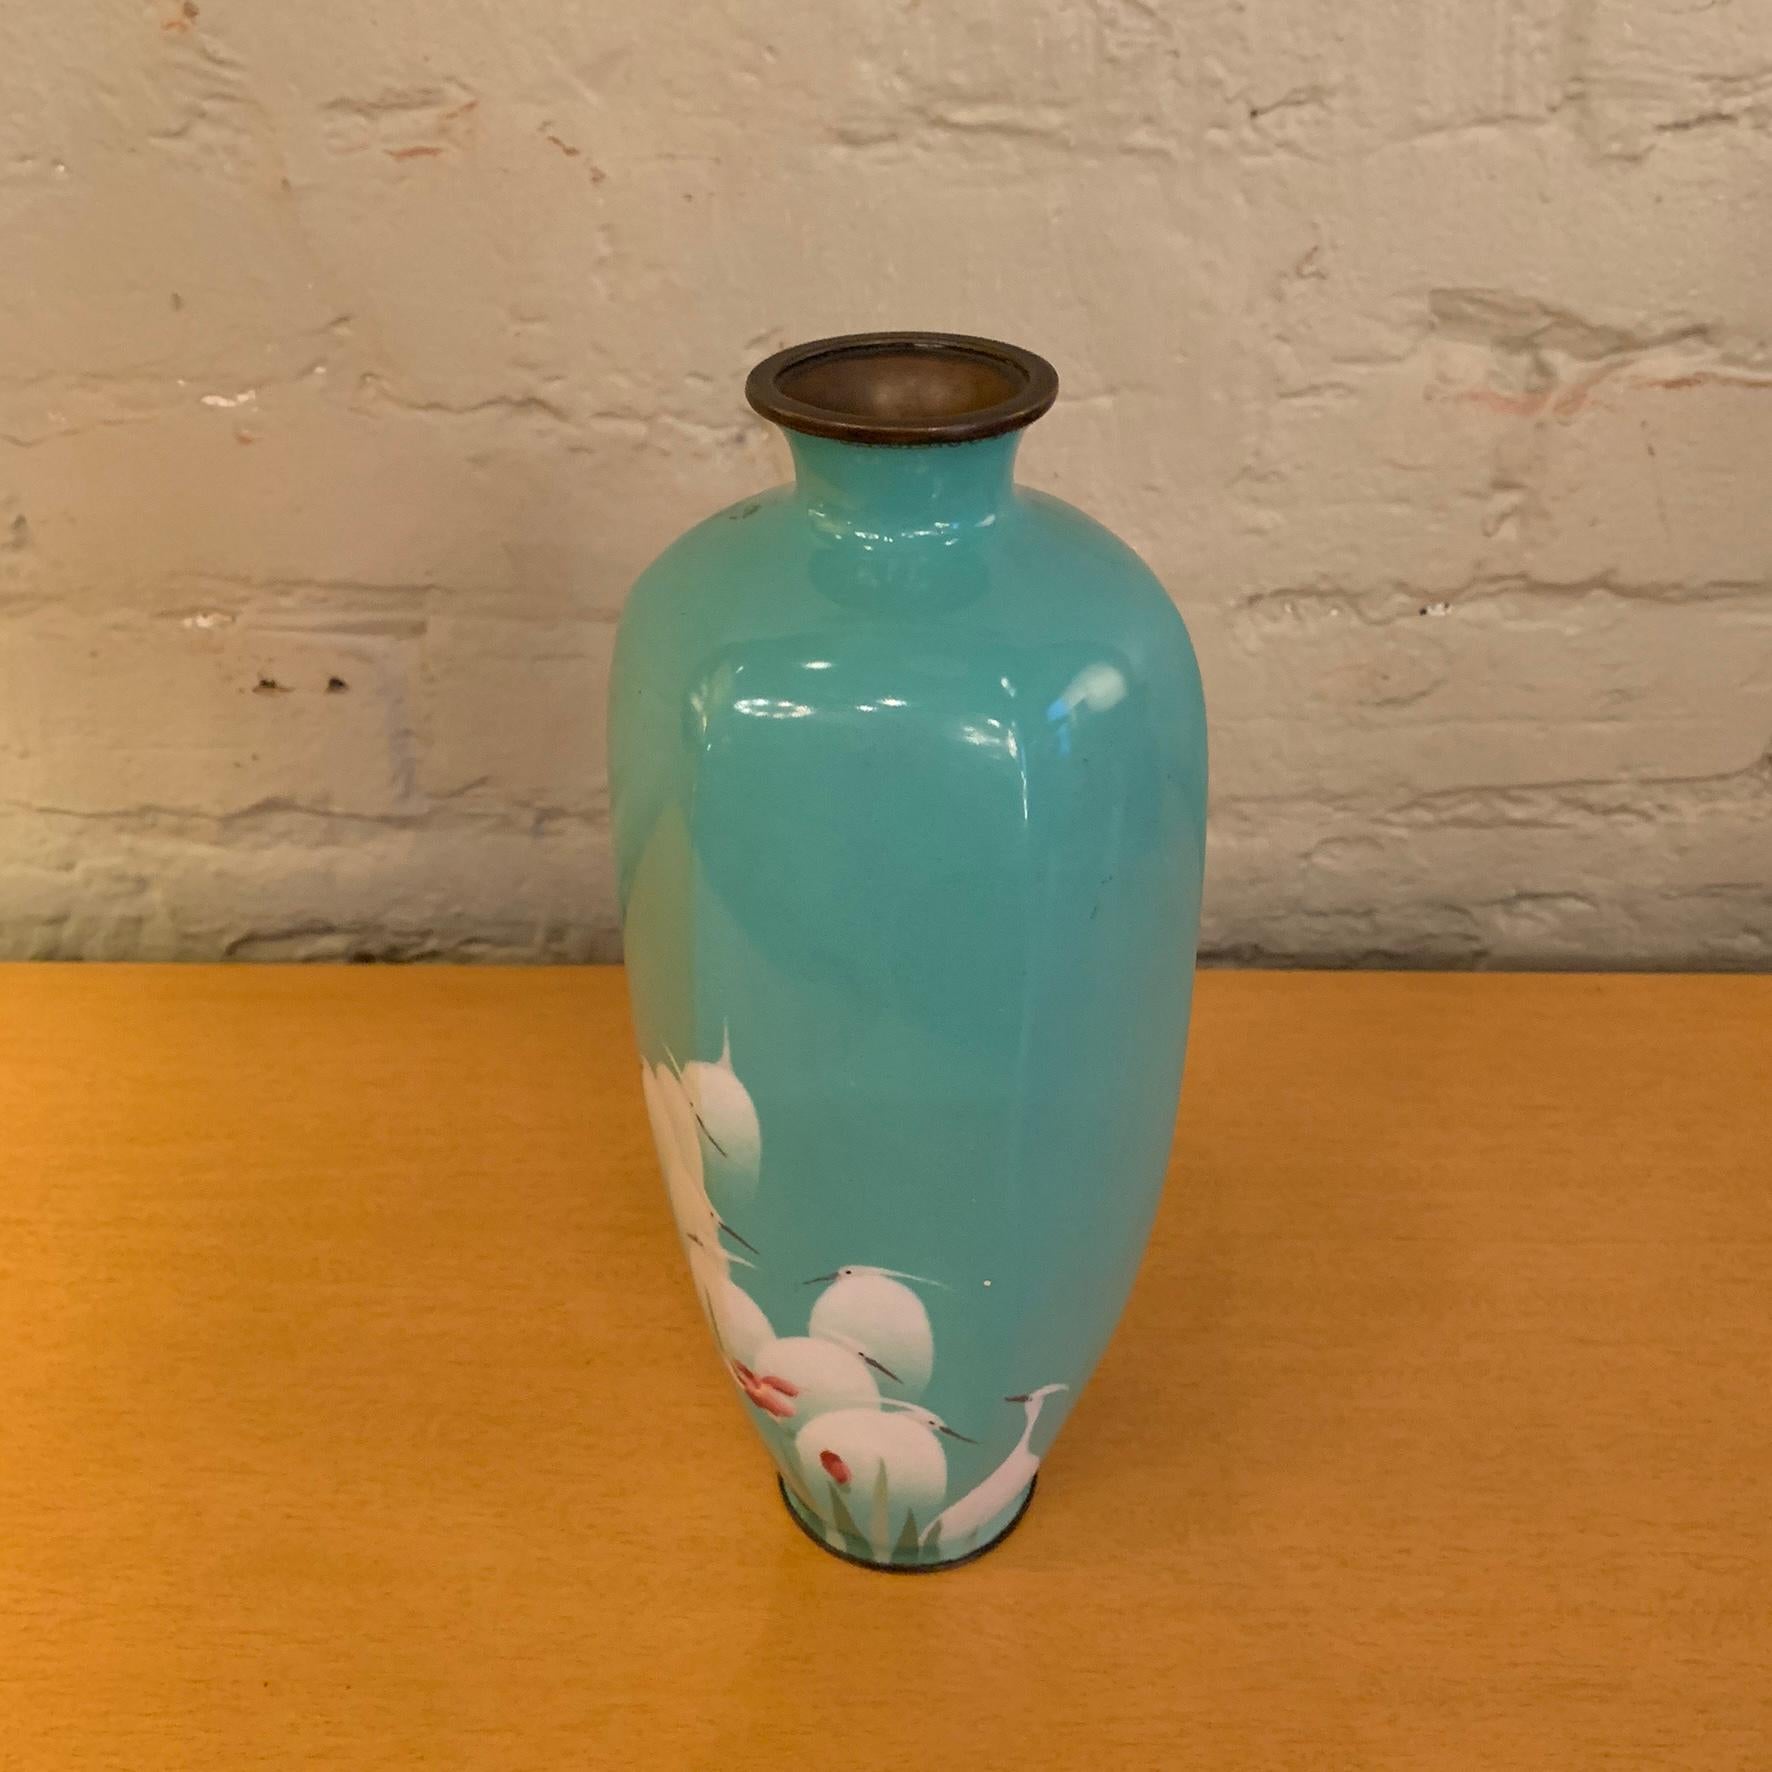 Joli vase en émail sur cuivre, bleu turquoise, représentant des oiseaux en cascade, probablement originaire de Chine, vers les années 1930.